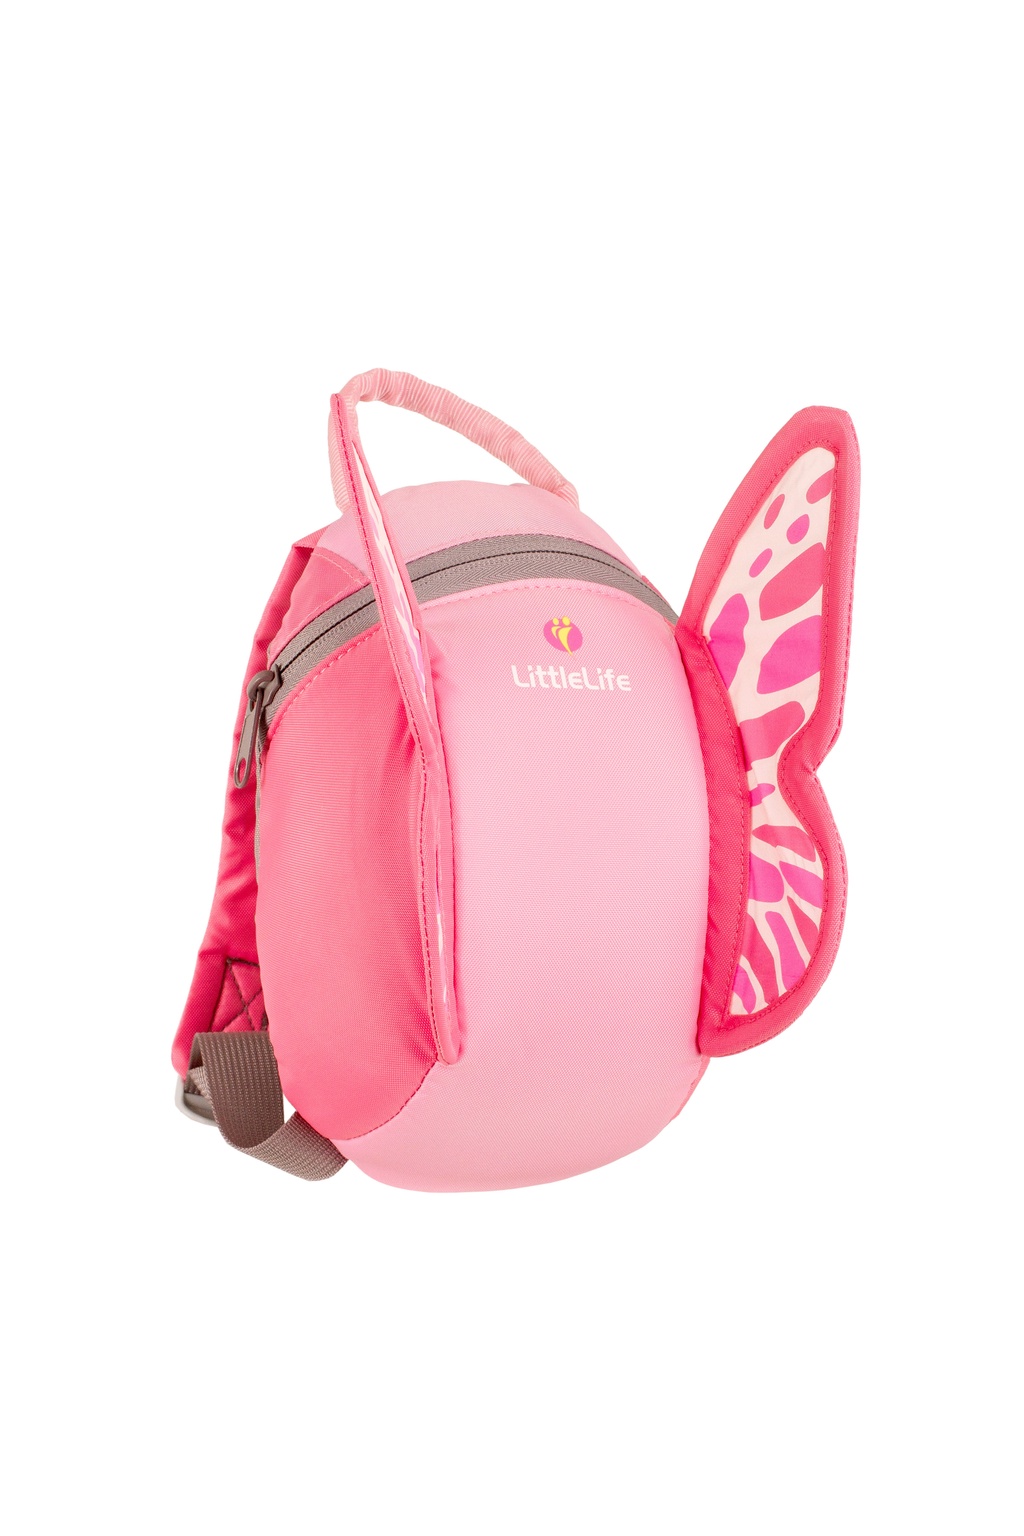 เกี่ยวกับสินค้า LittleLife เป้จูงเด็ก ลายผีเสื้อ (Butterfly Toddler Backpack with rein) สำหรับเด็ก 1-3 ปี